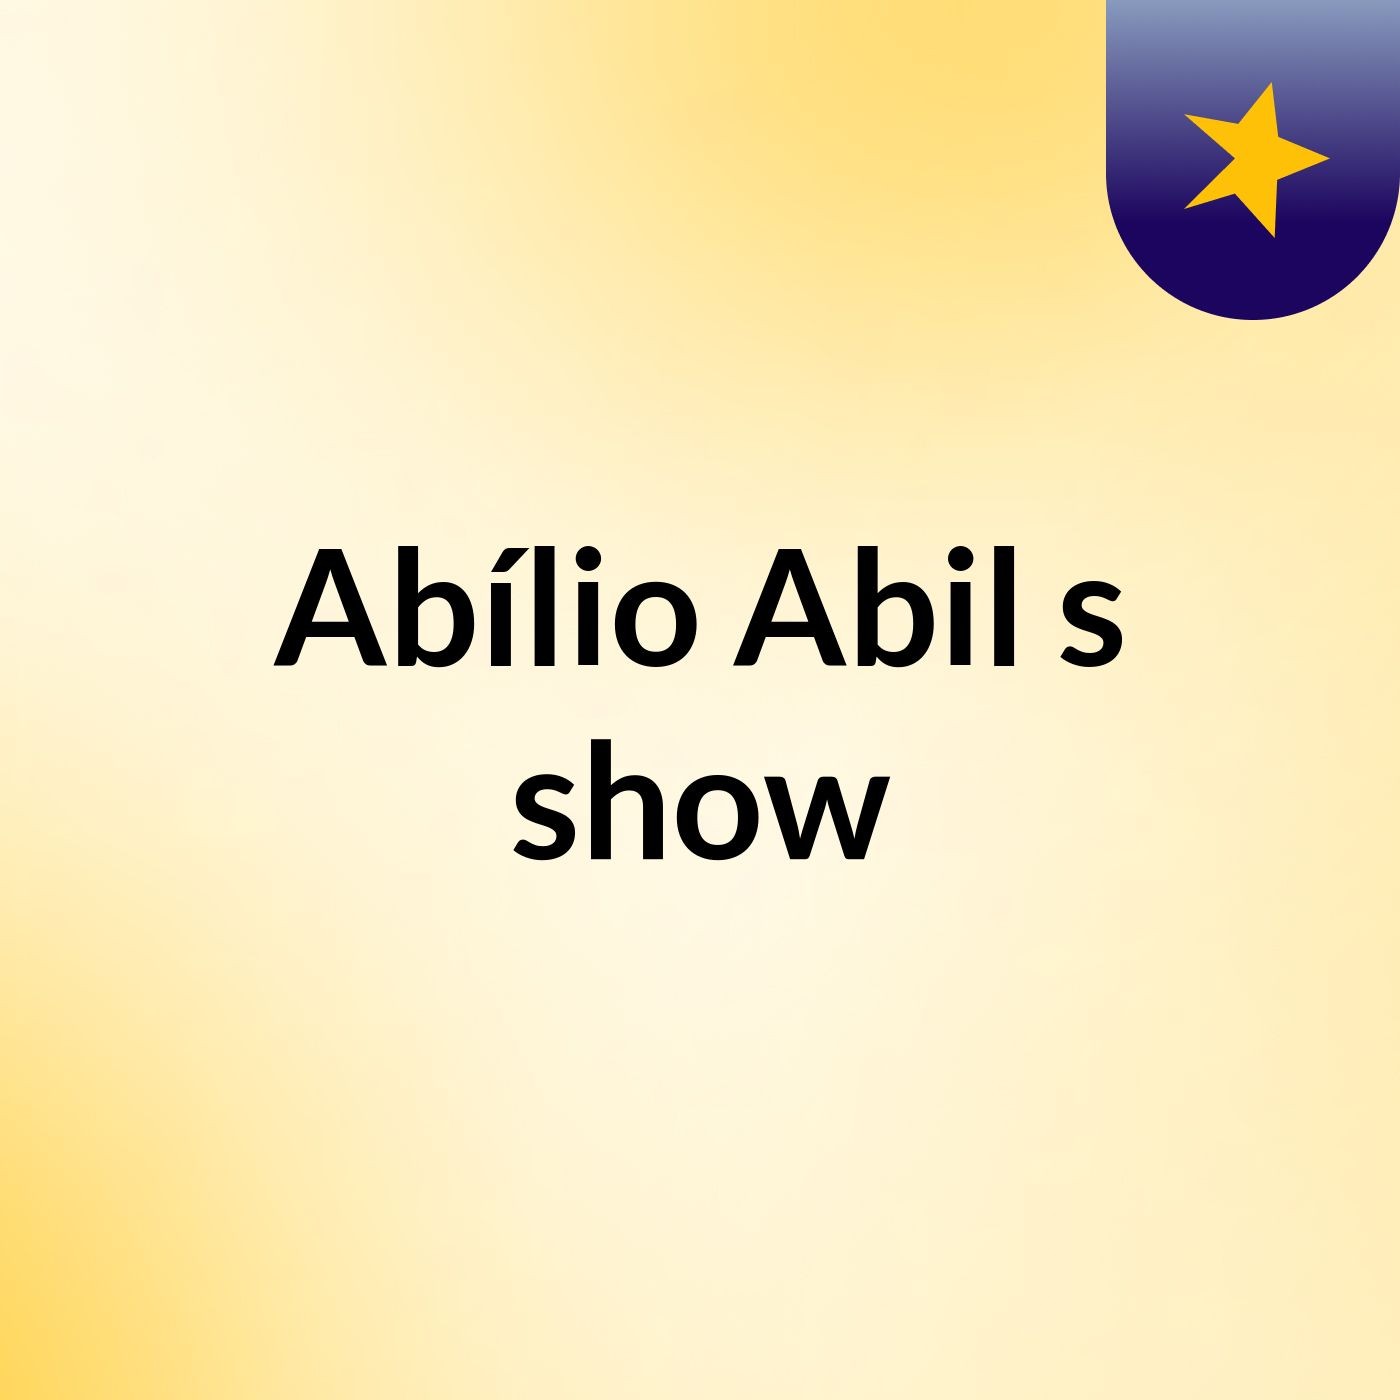 Abílio Abil's show